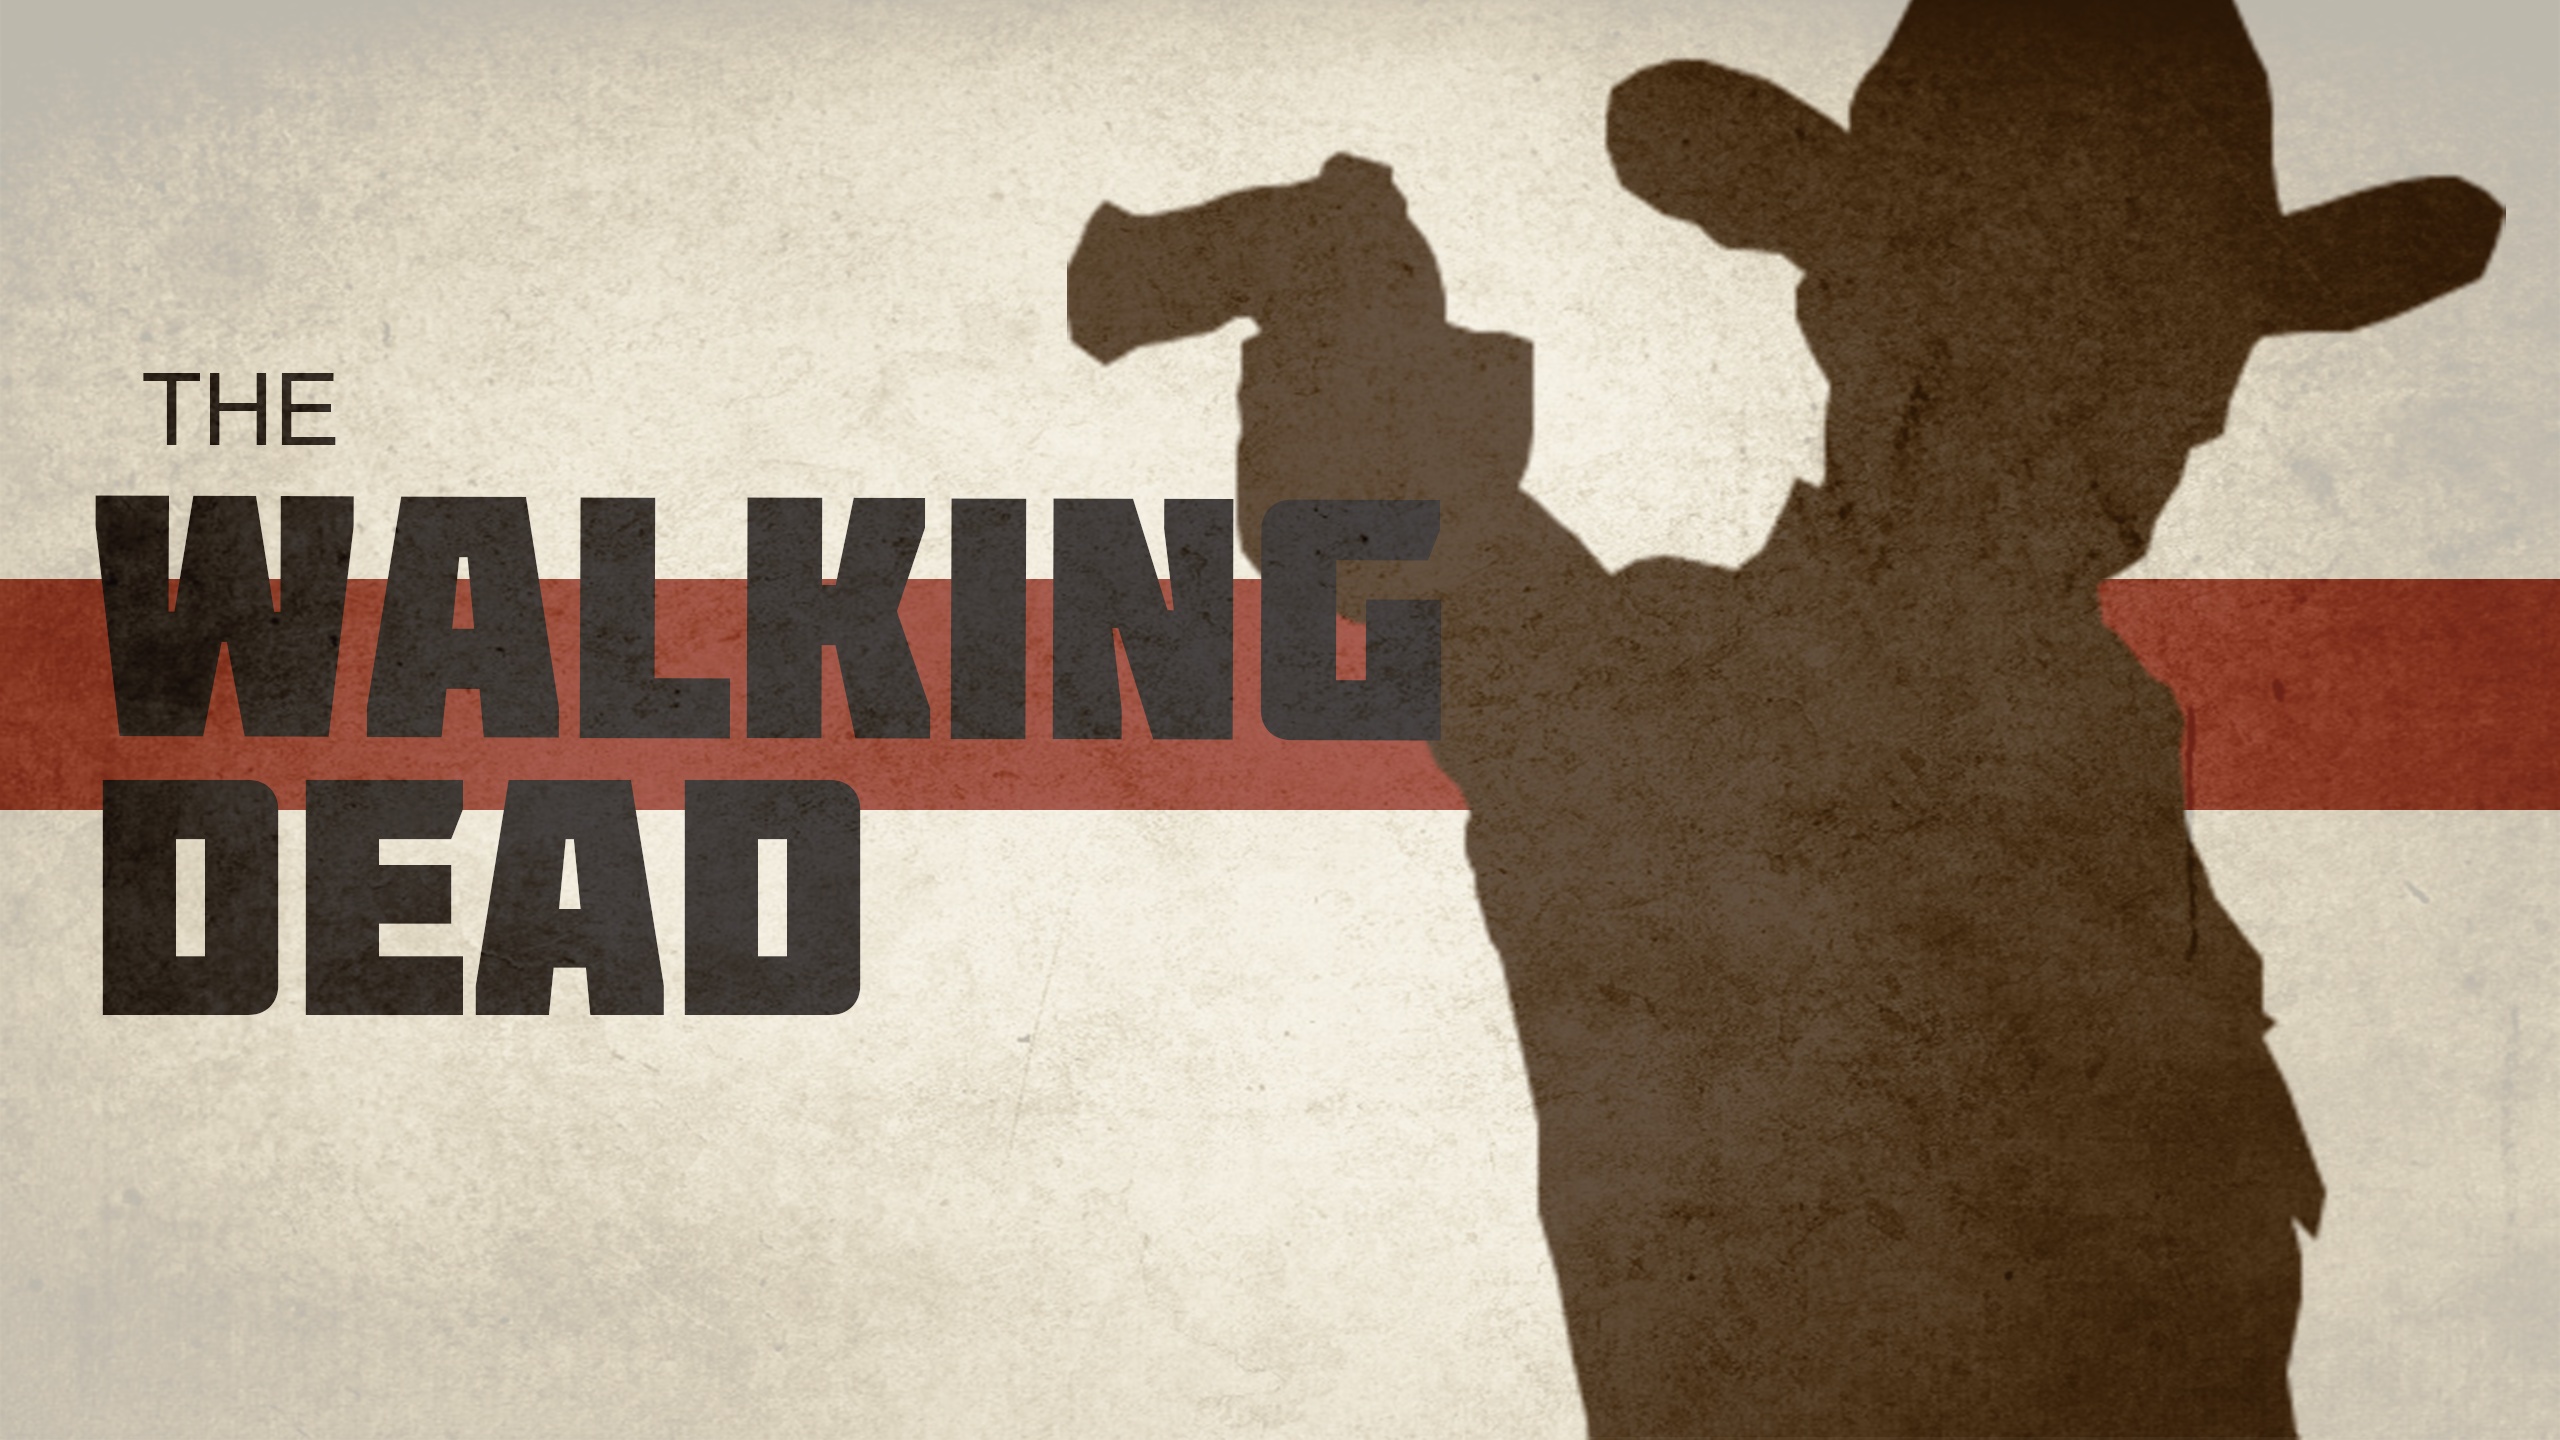 The Walking Dead Background Wallpaper